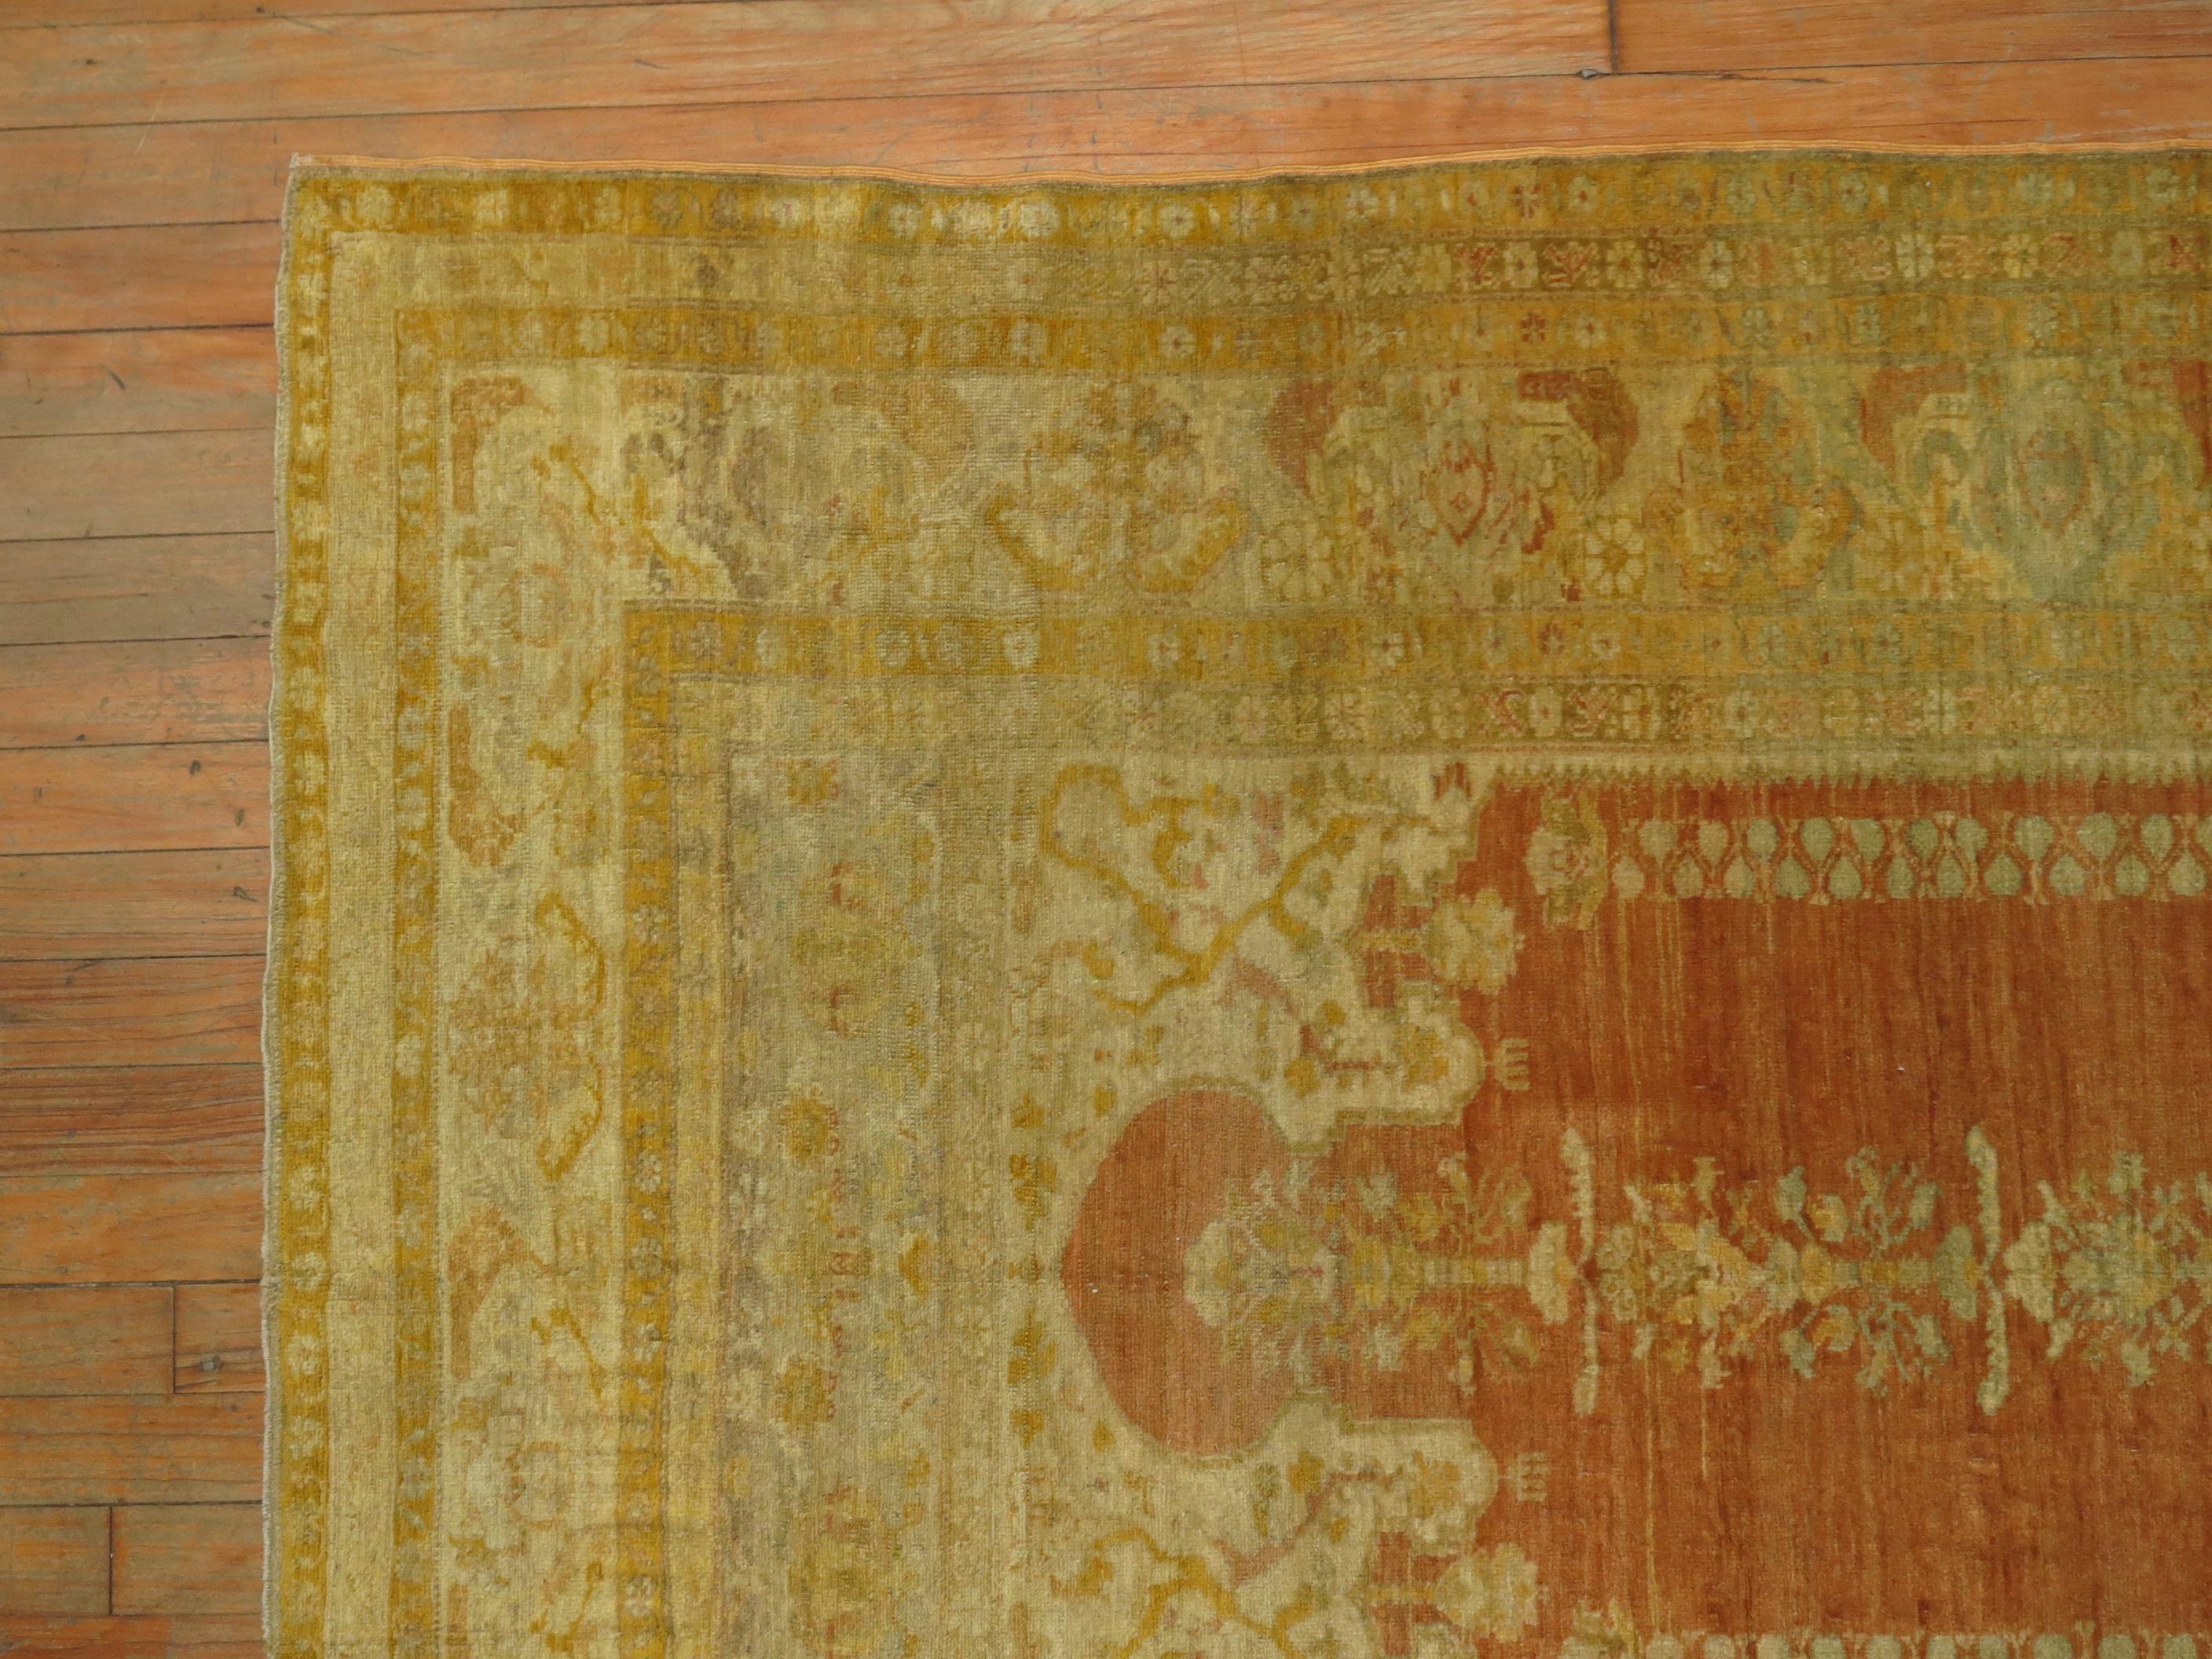 Tapis de prière Sivas turc de la fin du 19ème siècle avec un motif classique de niche de prière de Mihrab. La meilleure des qualités, pour les connaisseurs en tapis. La pêche chaude et l'or sont les couleurs dominantes 

Mesures : 3'11